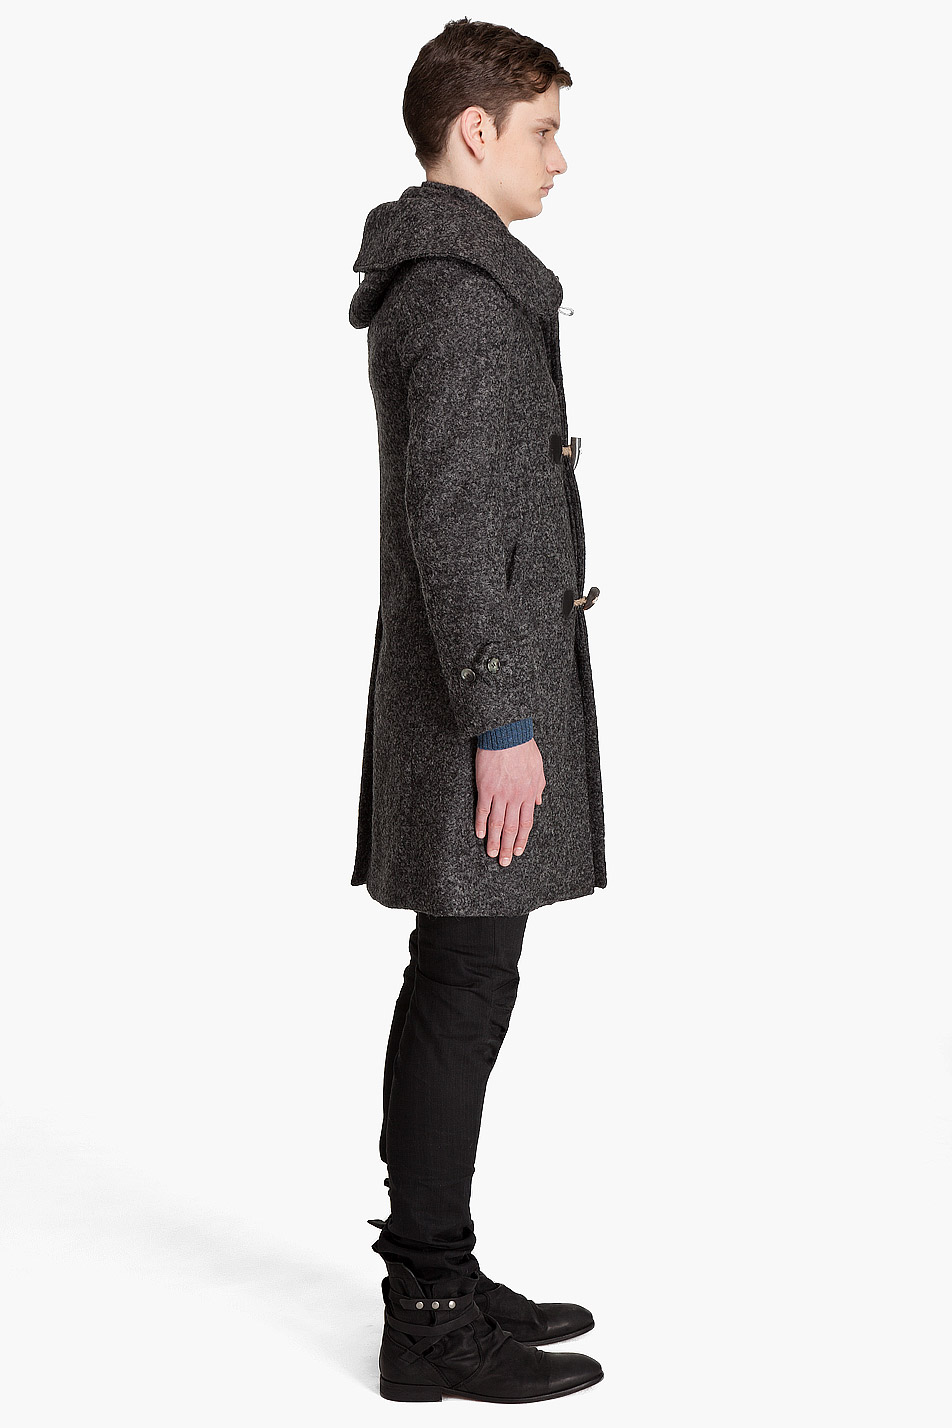 Lyst - Alexander mcqueen Duffle Coat in Gray for Men